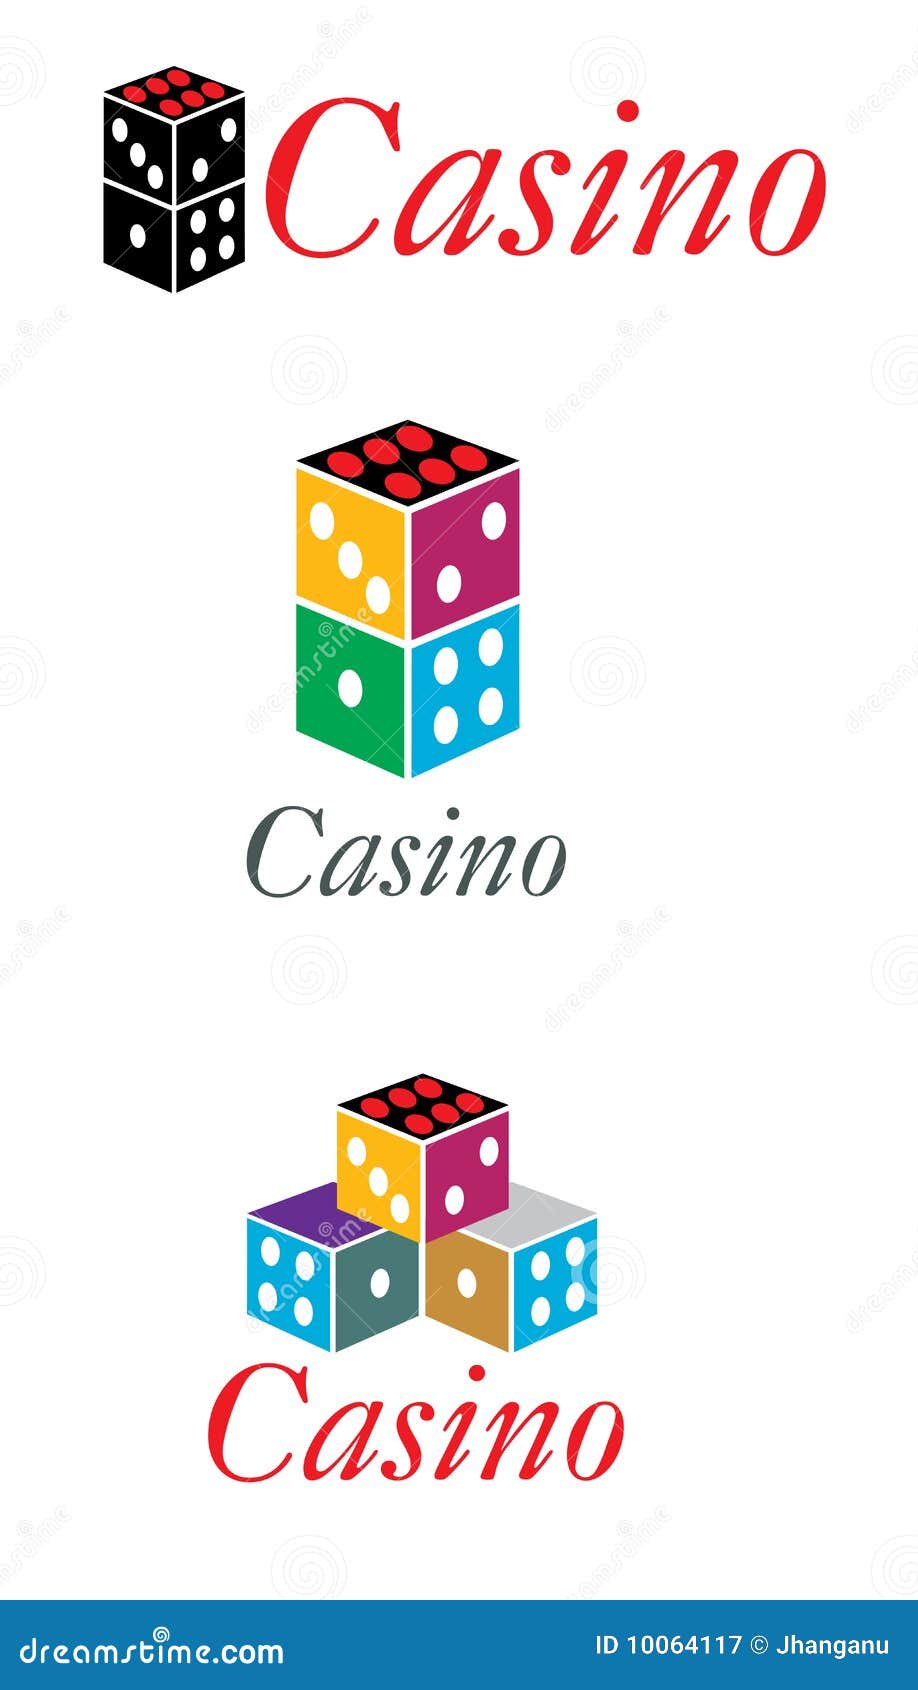 casino joker